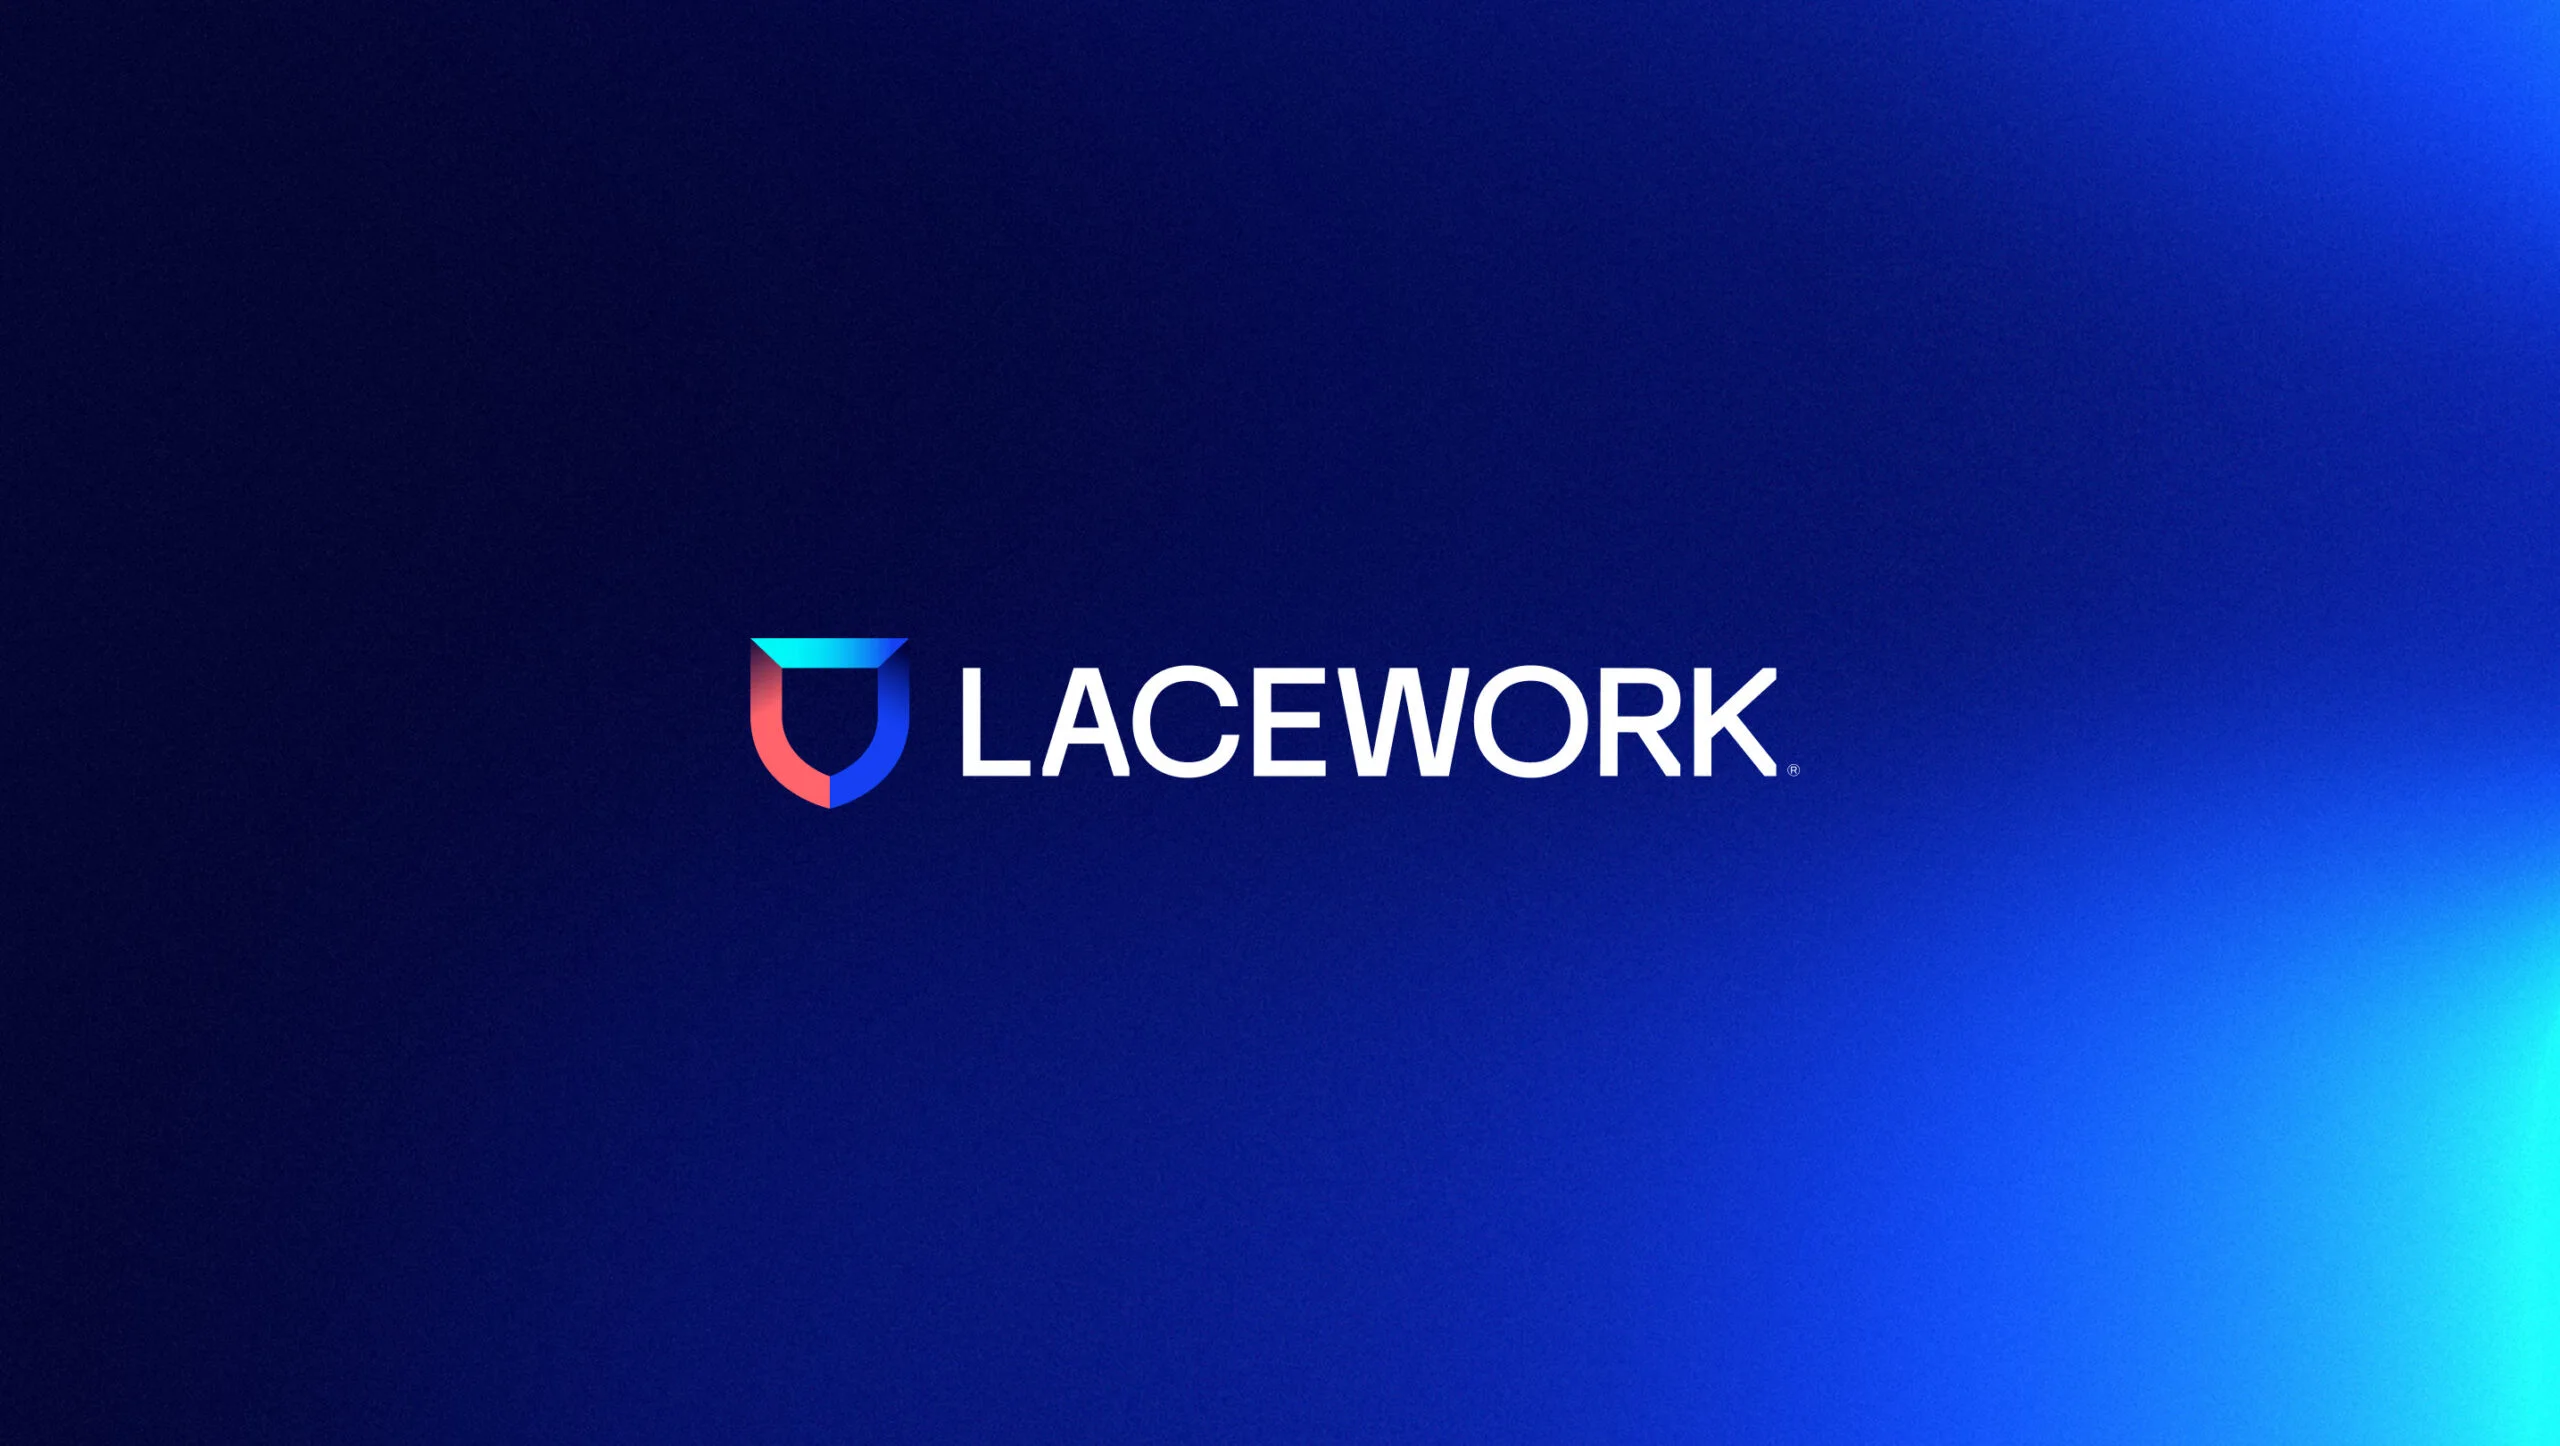 Lacework Business Model | The Brand Hopper